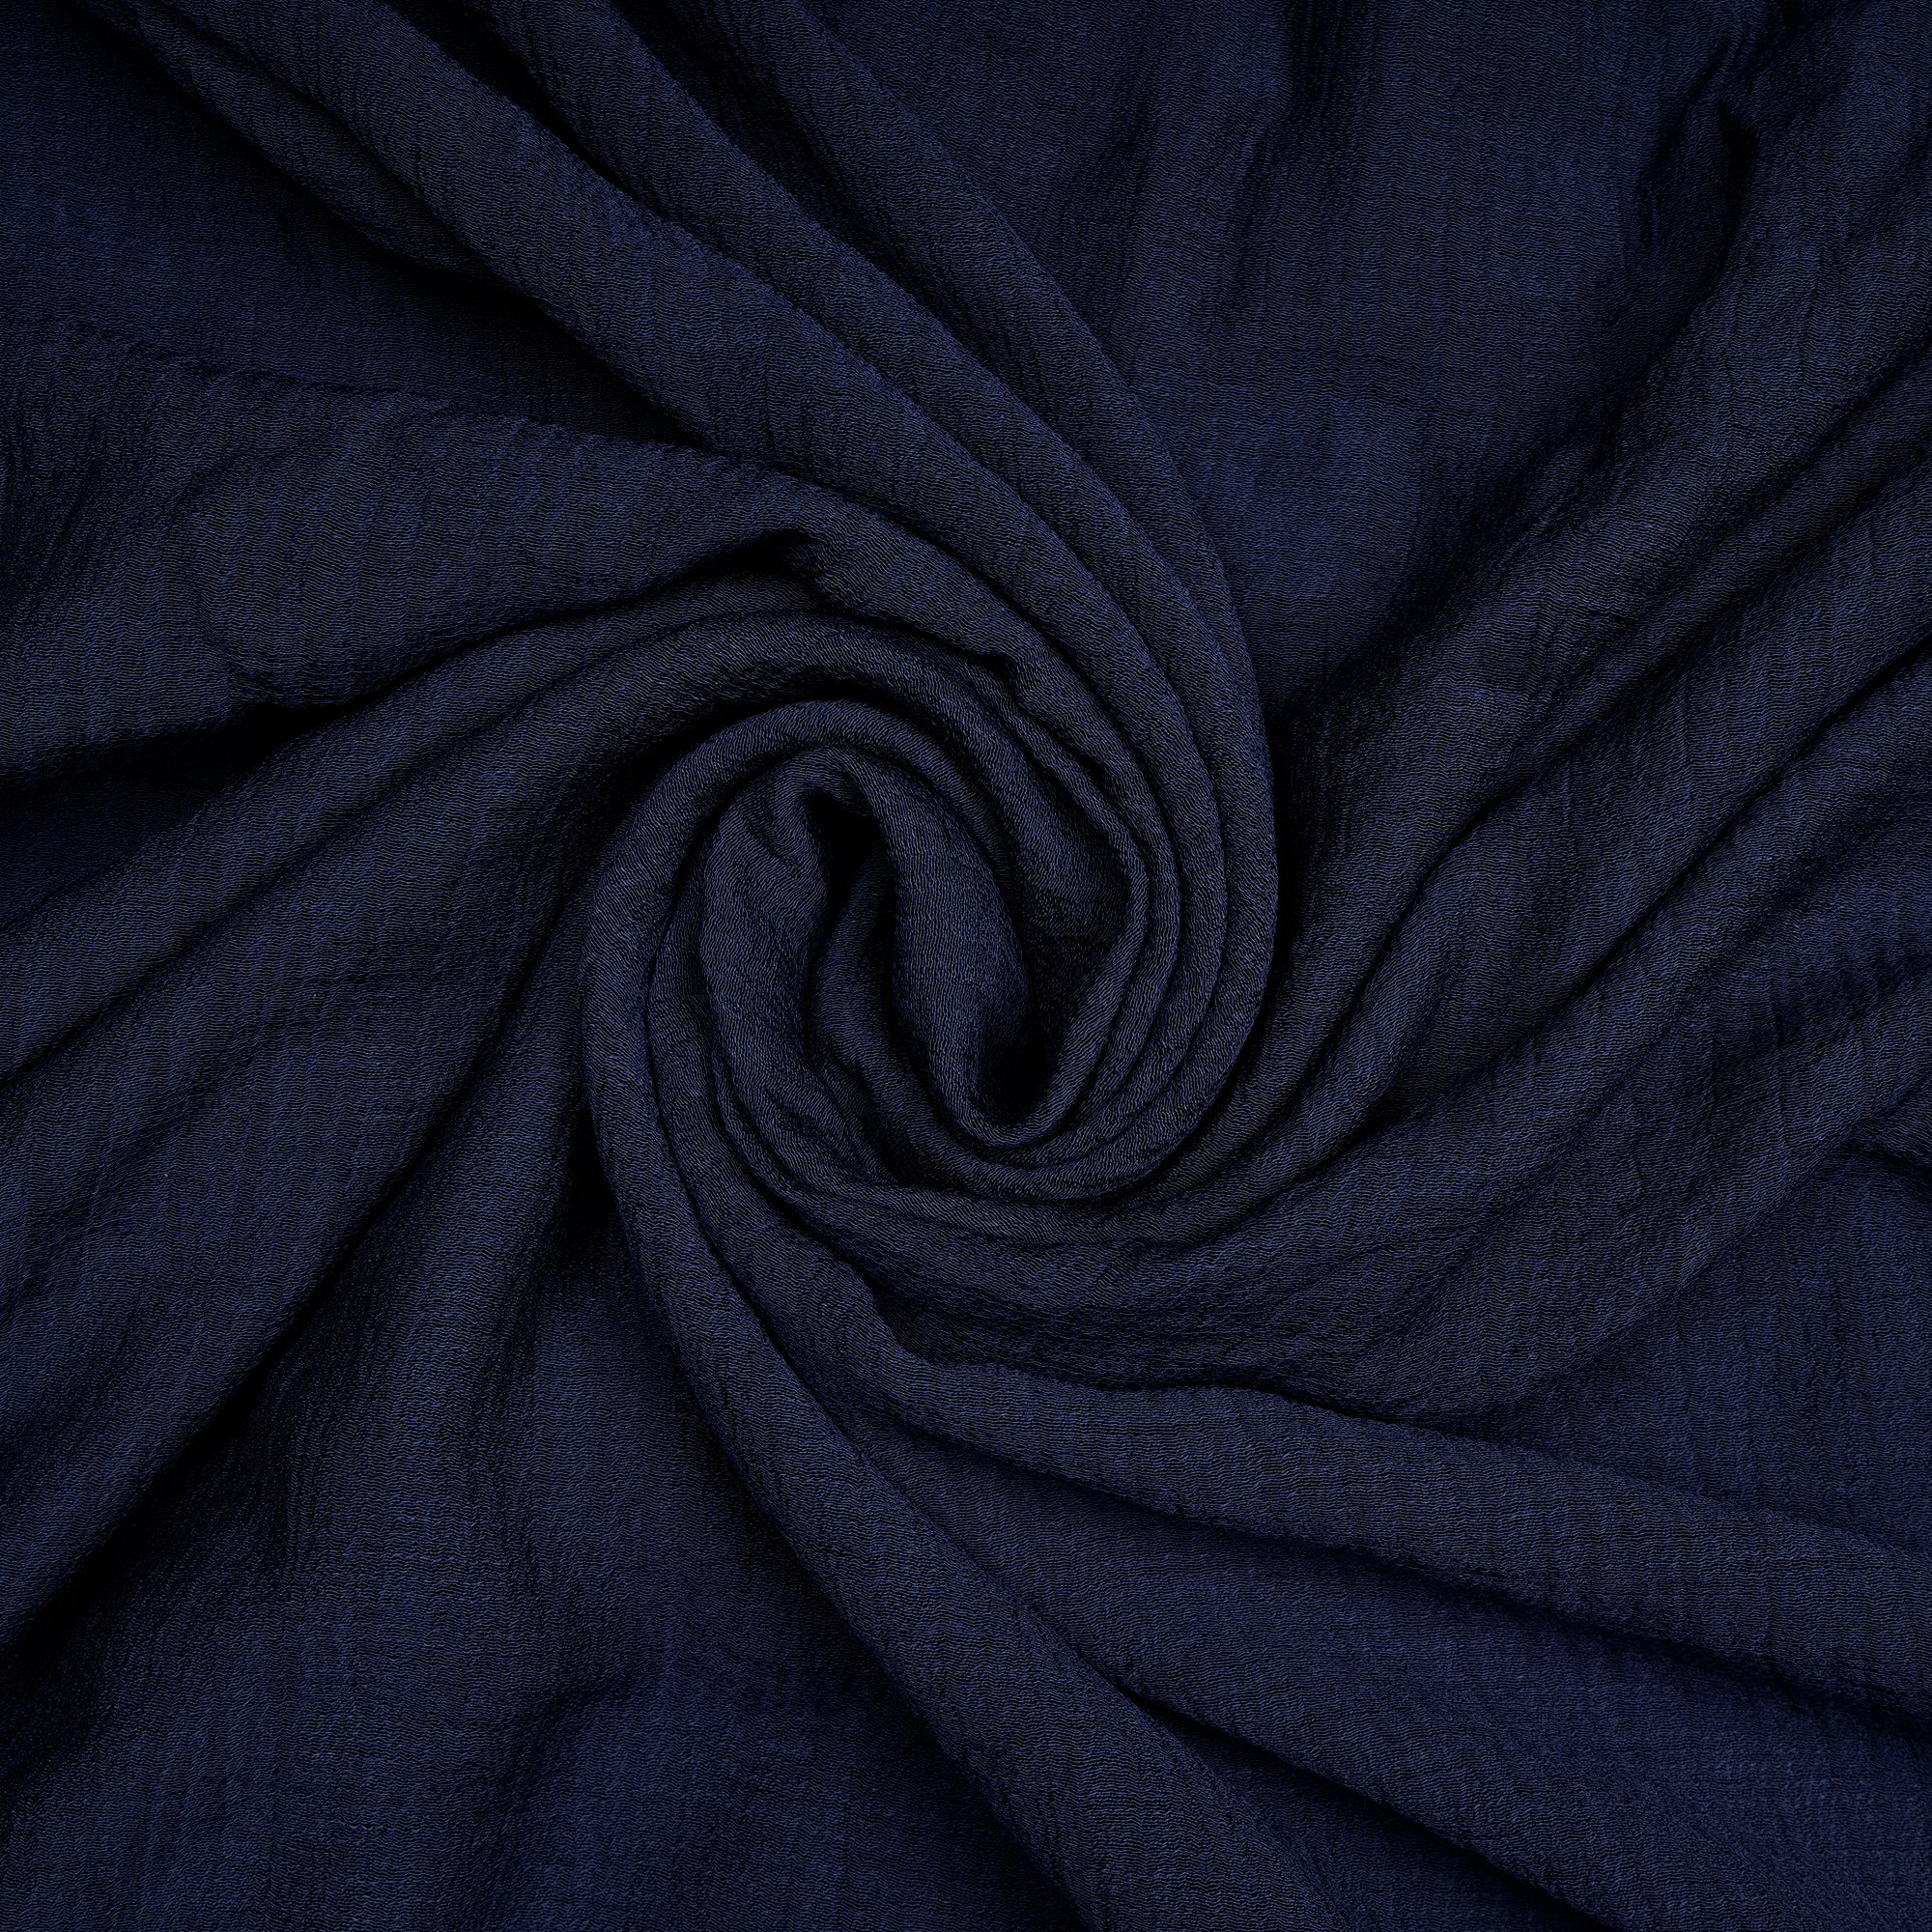 Dark Blue Color Viscose Nylon Fabric